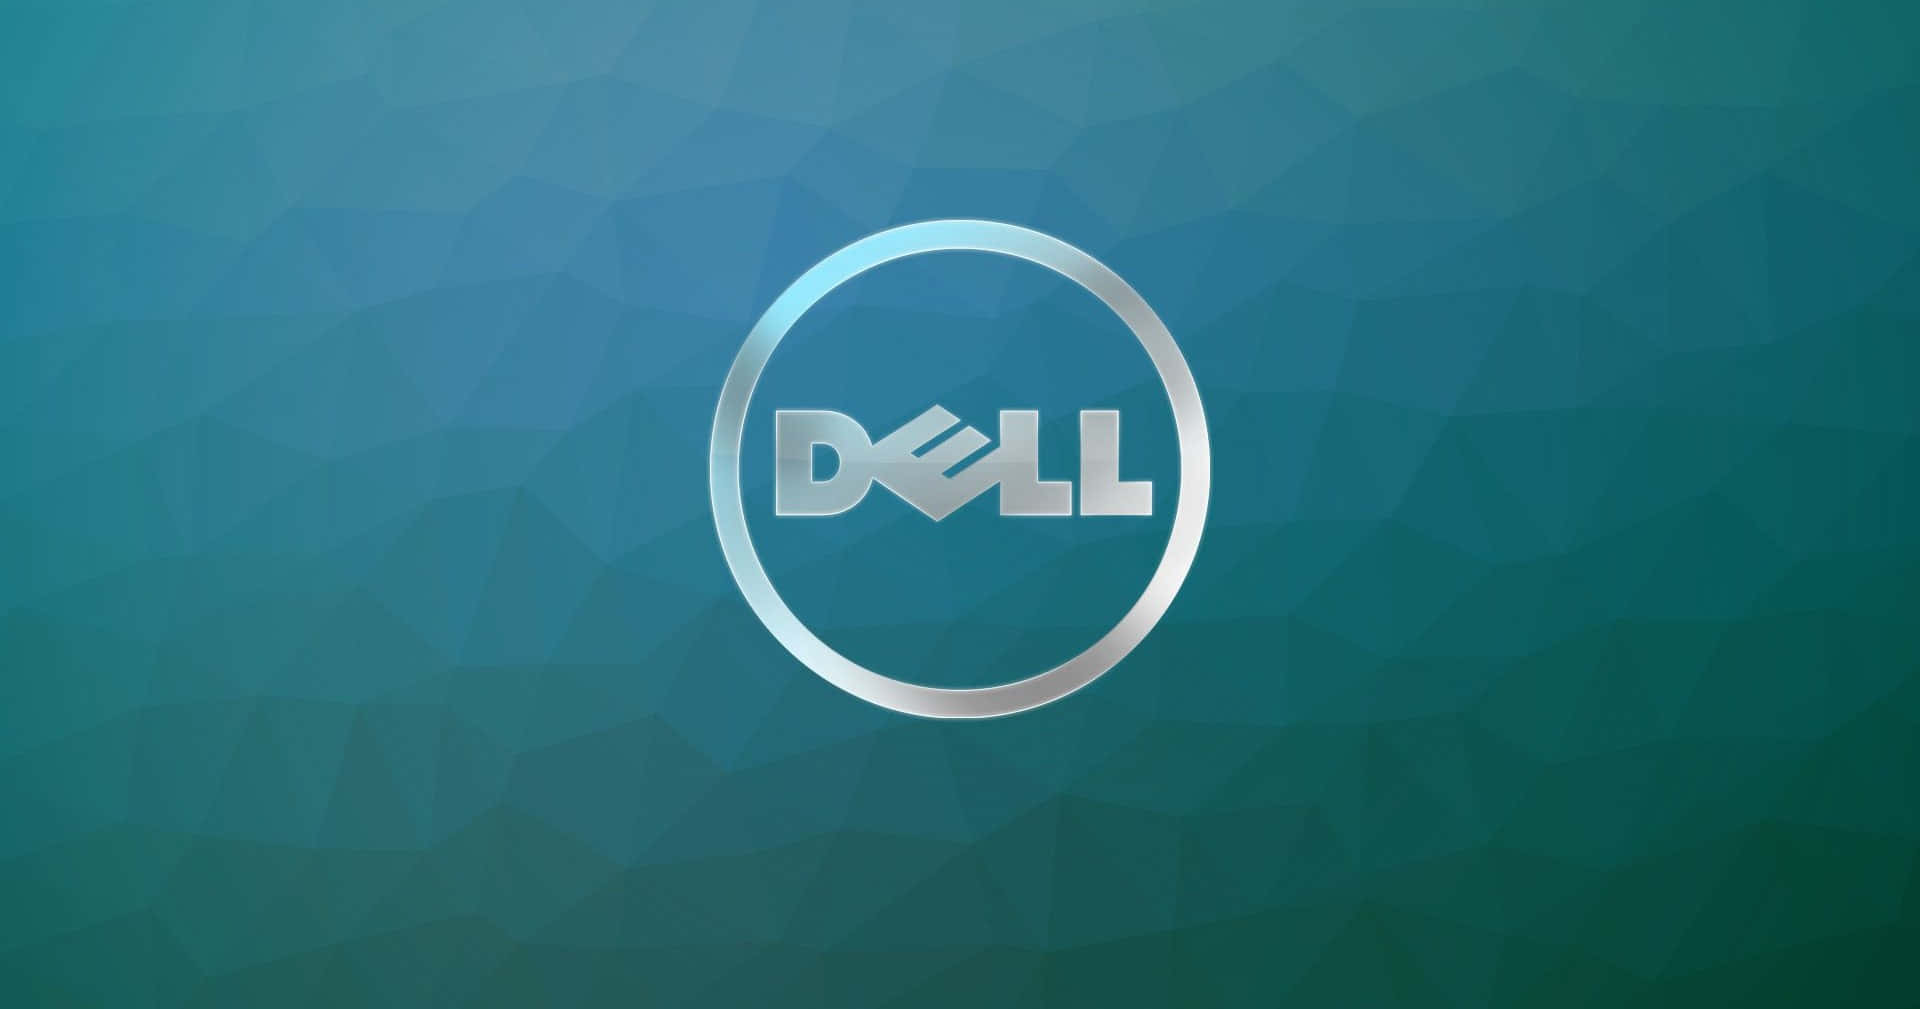 Másrápido Y Más Inteligente: Tecnología Dell Para Tus Necesidades